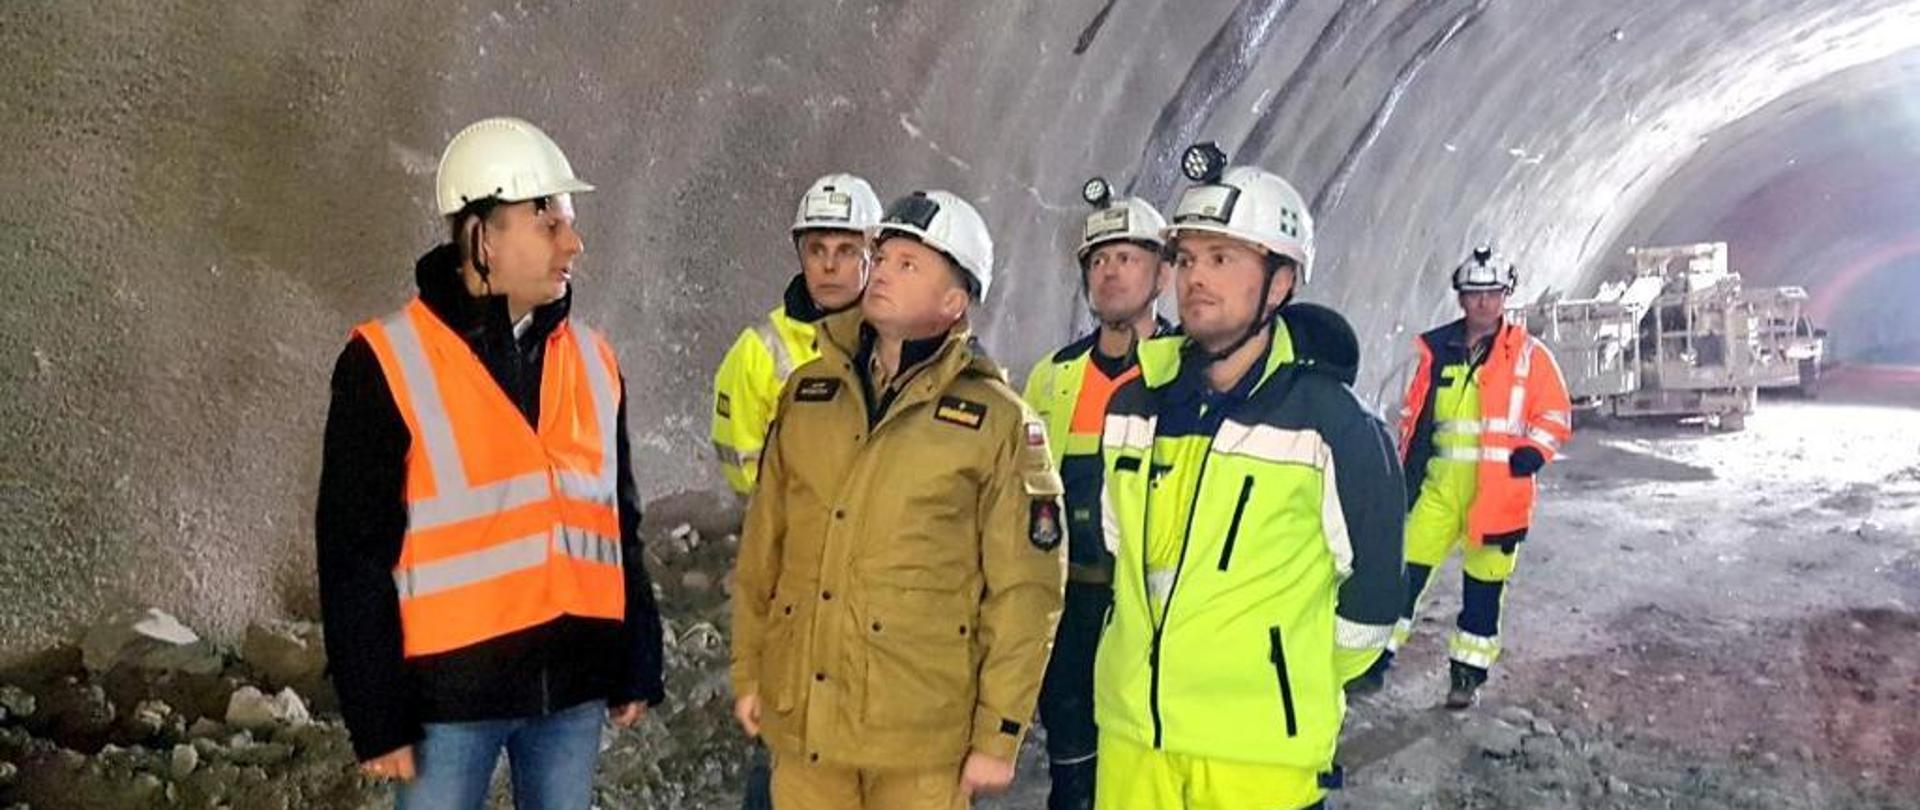 Zastępca Komendanta Głównego wraz z 5 mężczyznami na terenie budowy tunelu